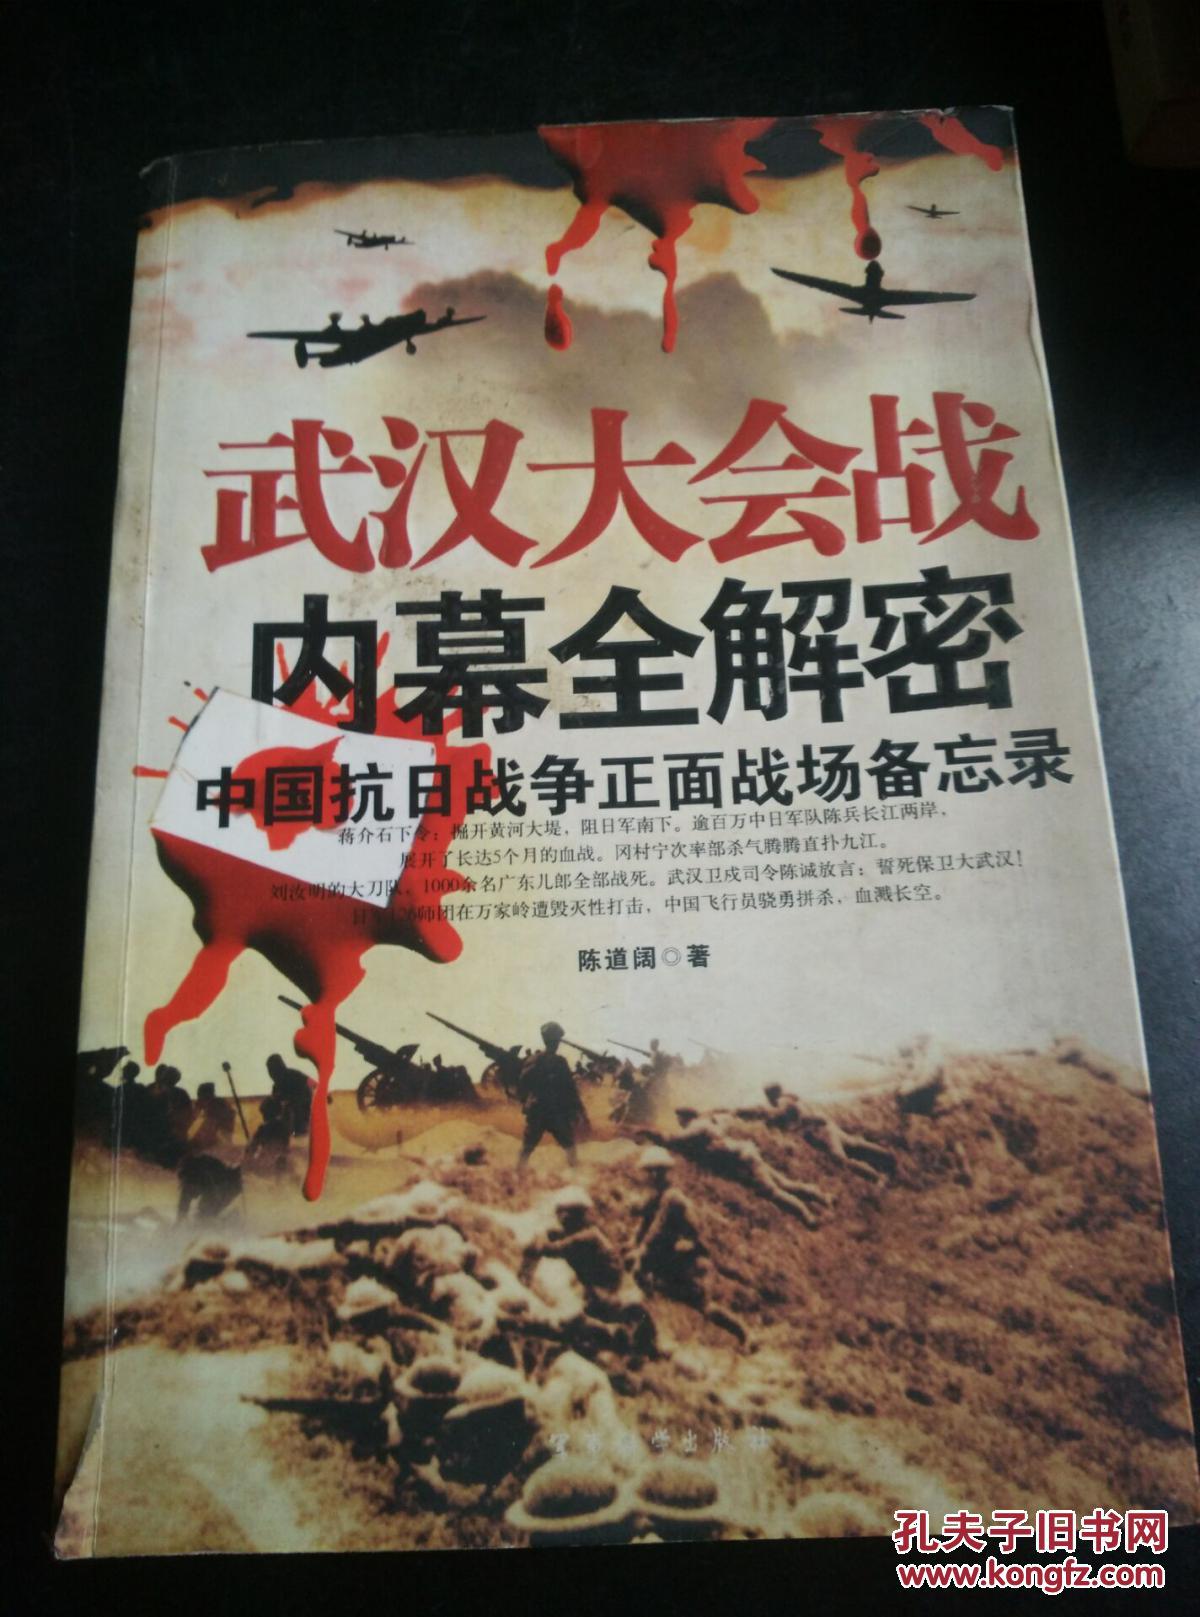 【图】武汉大会战 内幕全解密 中国抗日战争正